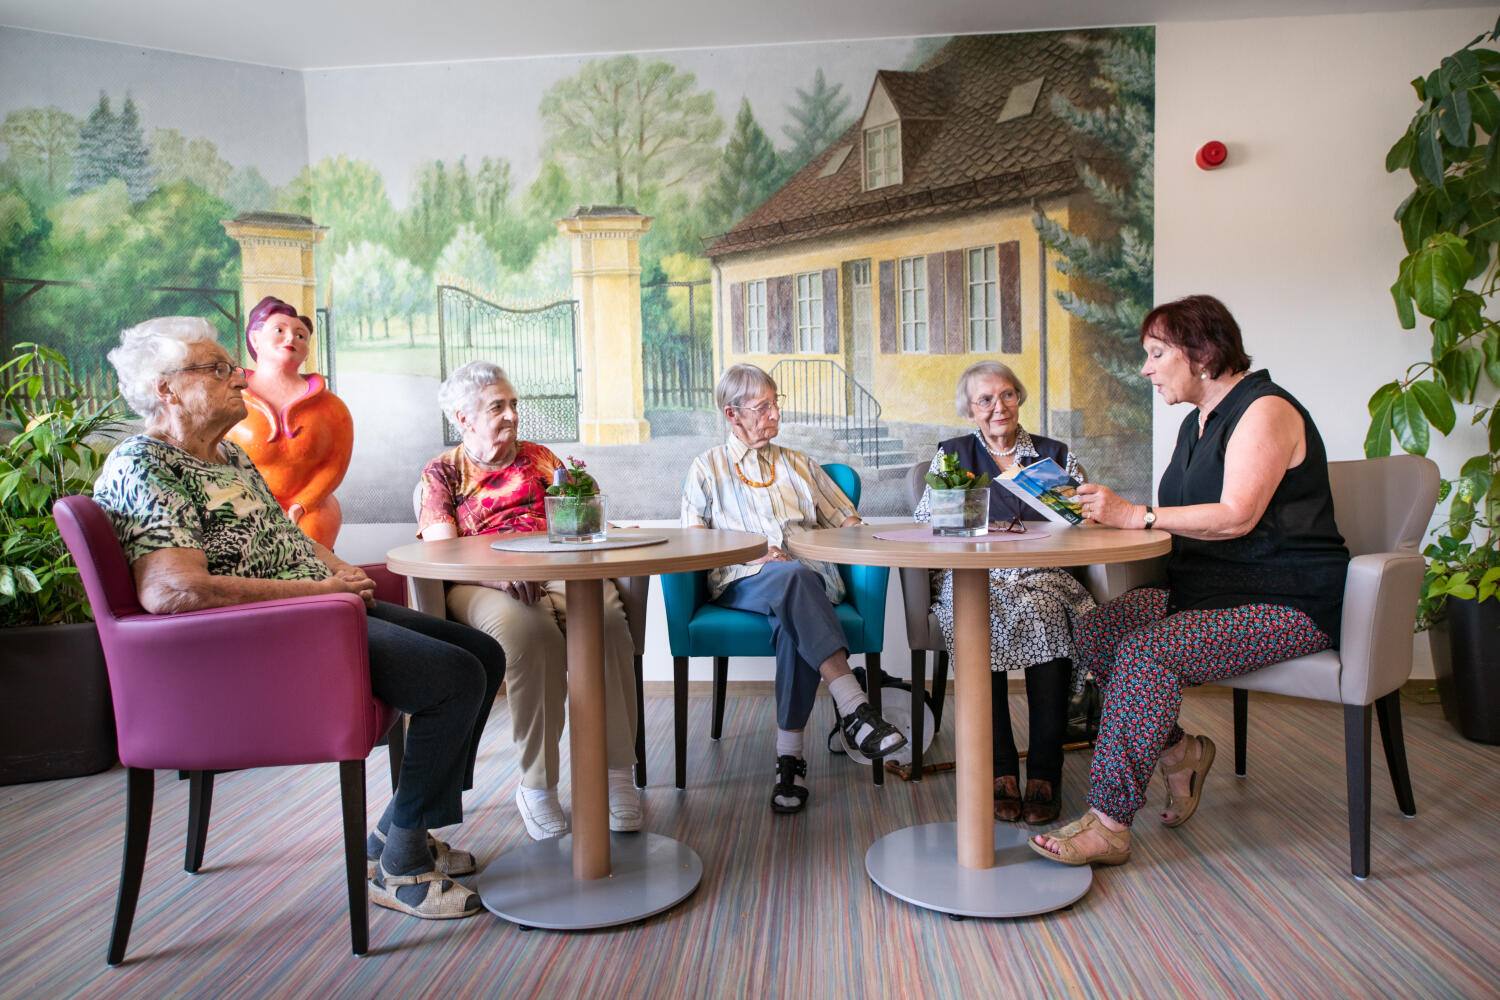 In einer Zimmerecke mit zwei runden Tischen sitzen 4 aufmerksame ältere Damen, die einer Vorleserin zuhören. Auf der hinteren Wand ist ein imposantes, buntes Wand-Bild. Es zeigt ein Häuschen zu einem Parkeingang mit schmiedeeisernem Tor. 